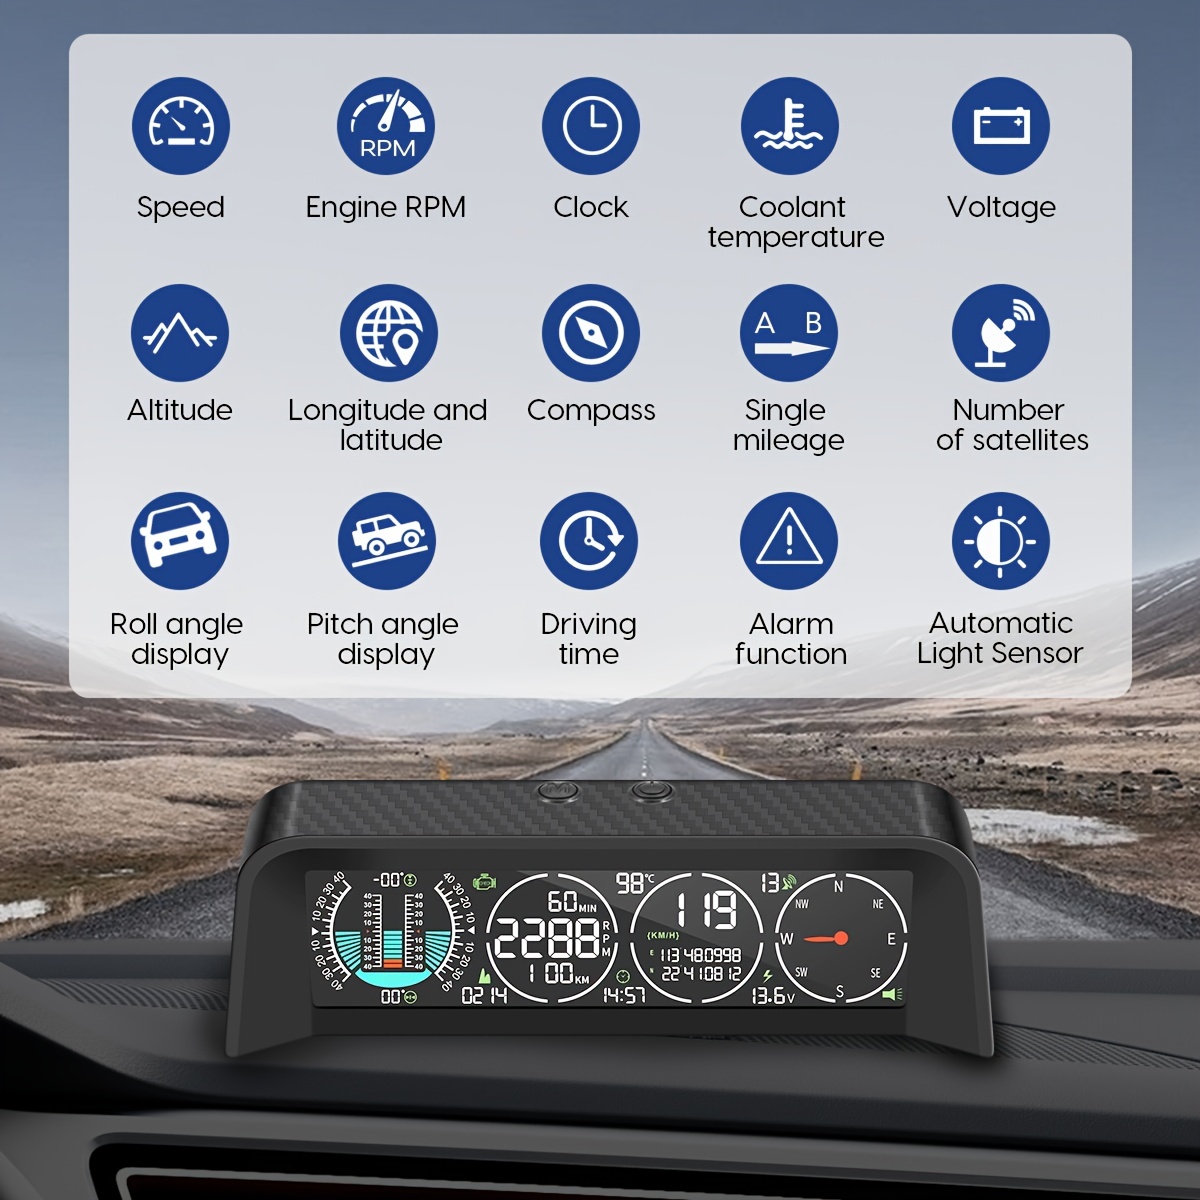 ACECAR Velocímetro digital OBD2, pantalla universal para coche HUD Head Up  con velocidad MPH, tacómetro, resolución de problemas, función de